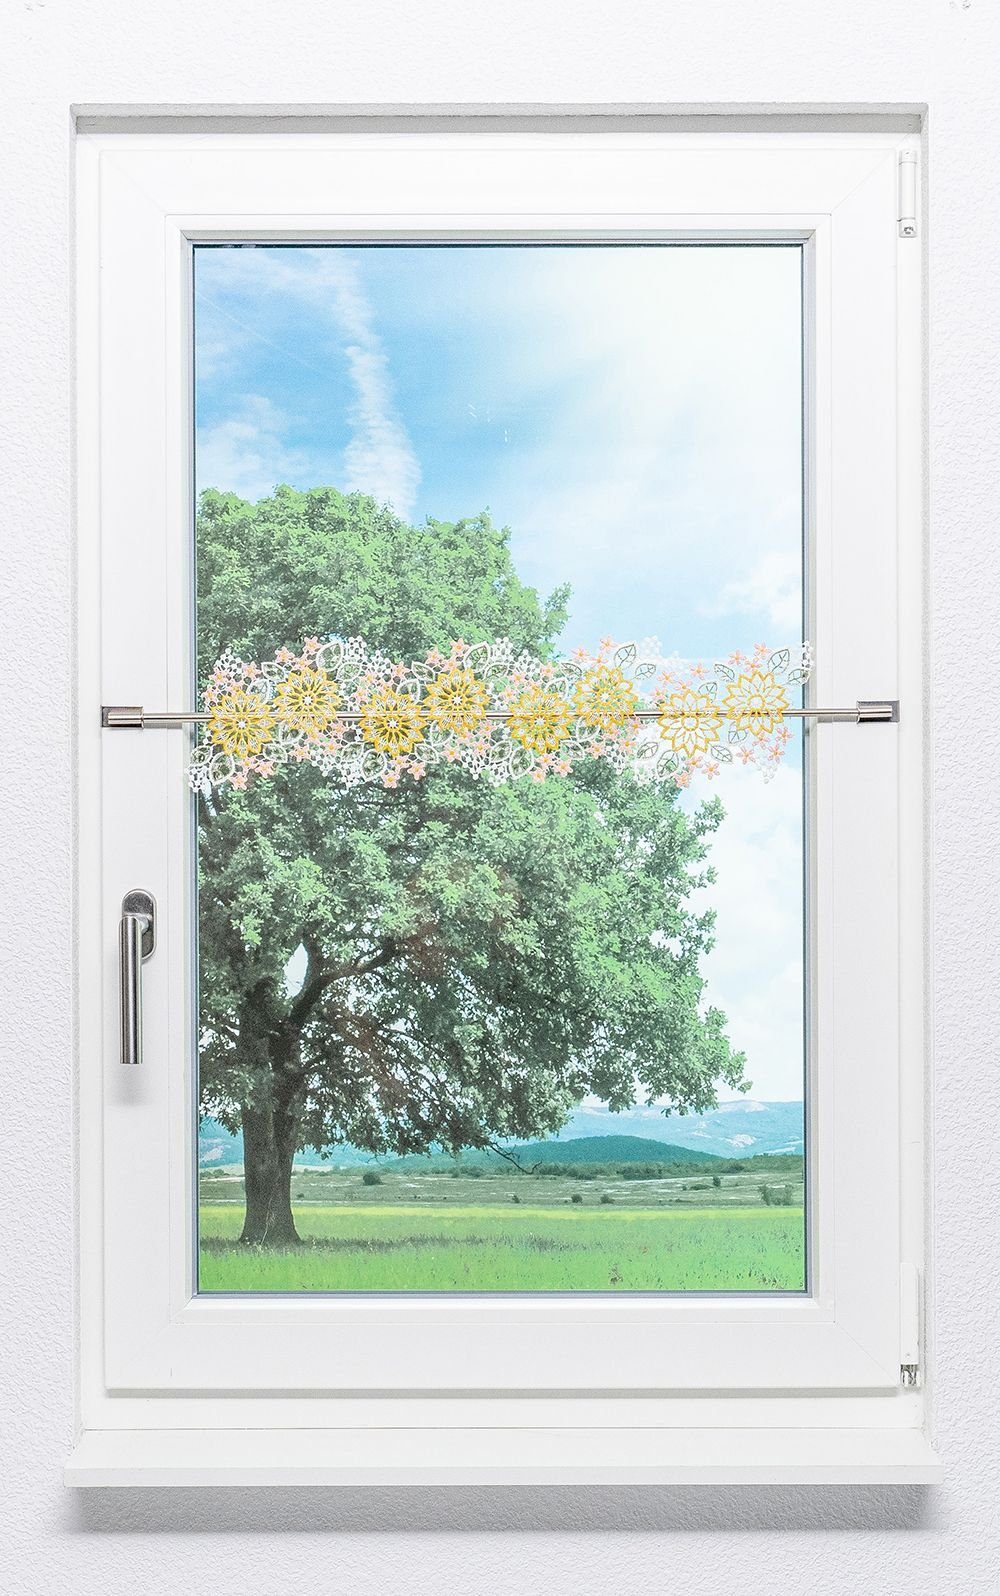 St), transparent, (1 14x42cm Spitze®, Blumenbordüre, Plauener Scheibengardine HxB